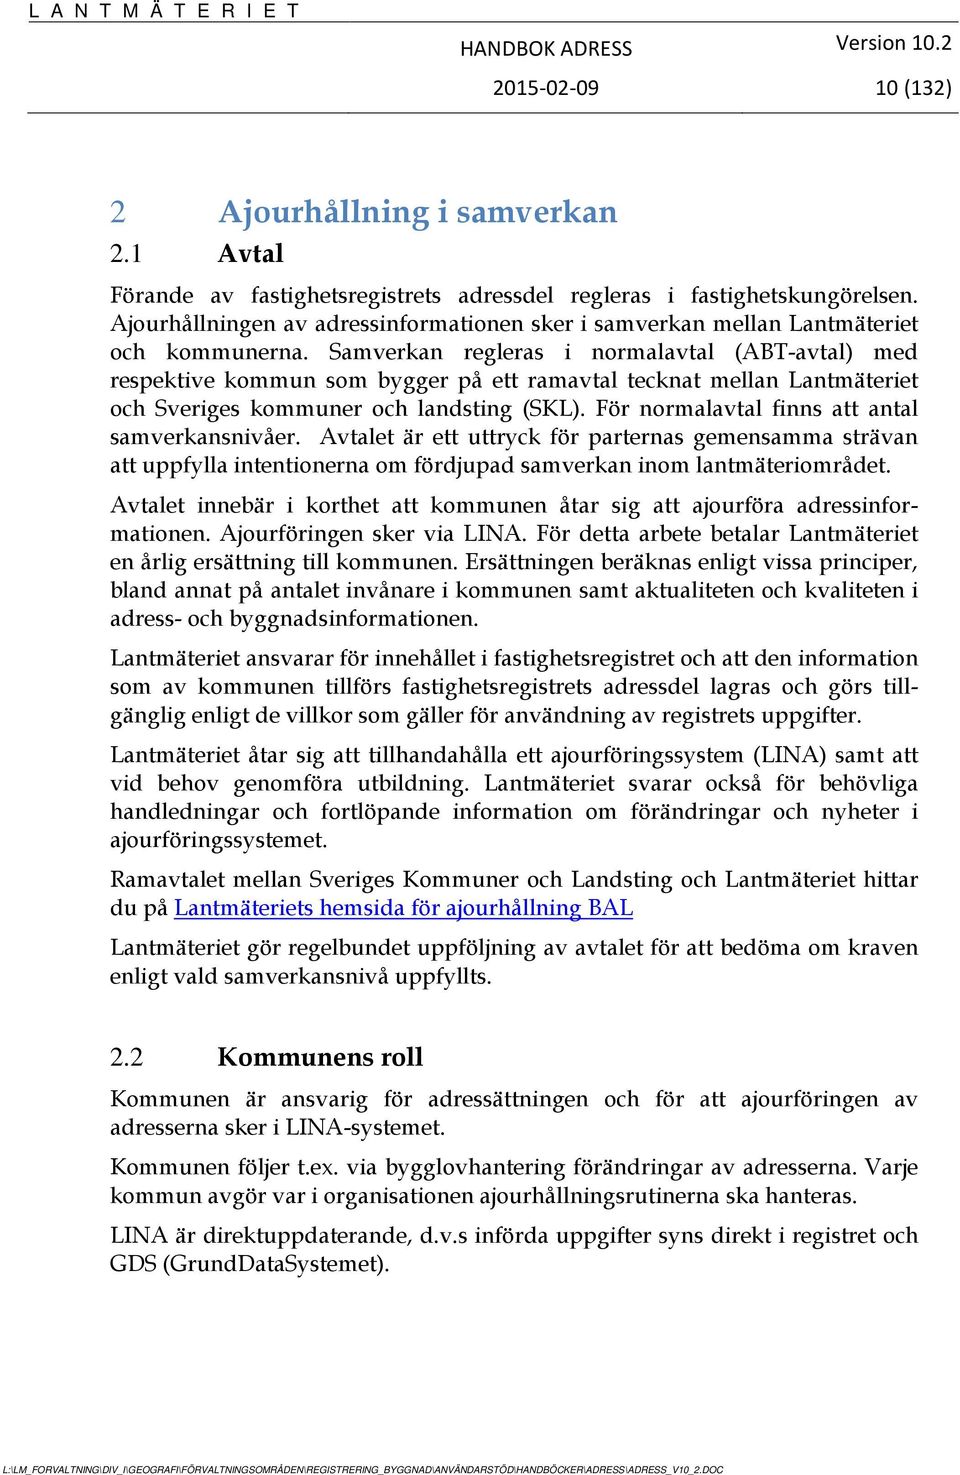 Samverkan regleras i normalavtal (ABT-avtal) med respektive kommun som bygger på ett ramavtal tecknat mellan Lantmäteriet och Sveriges kommuner och landsting (SKL).